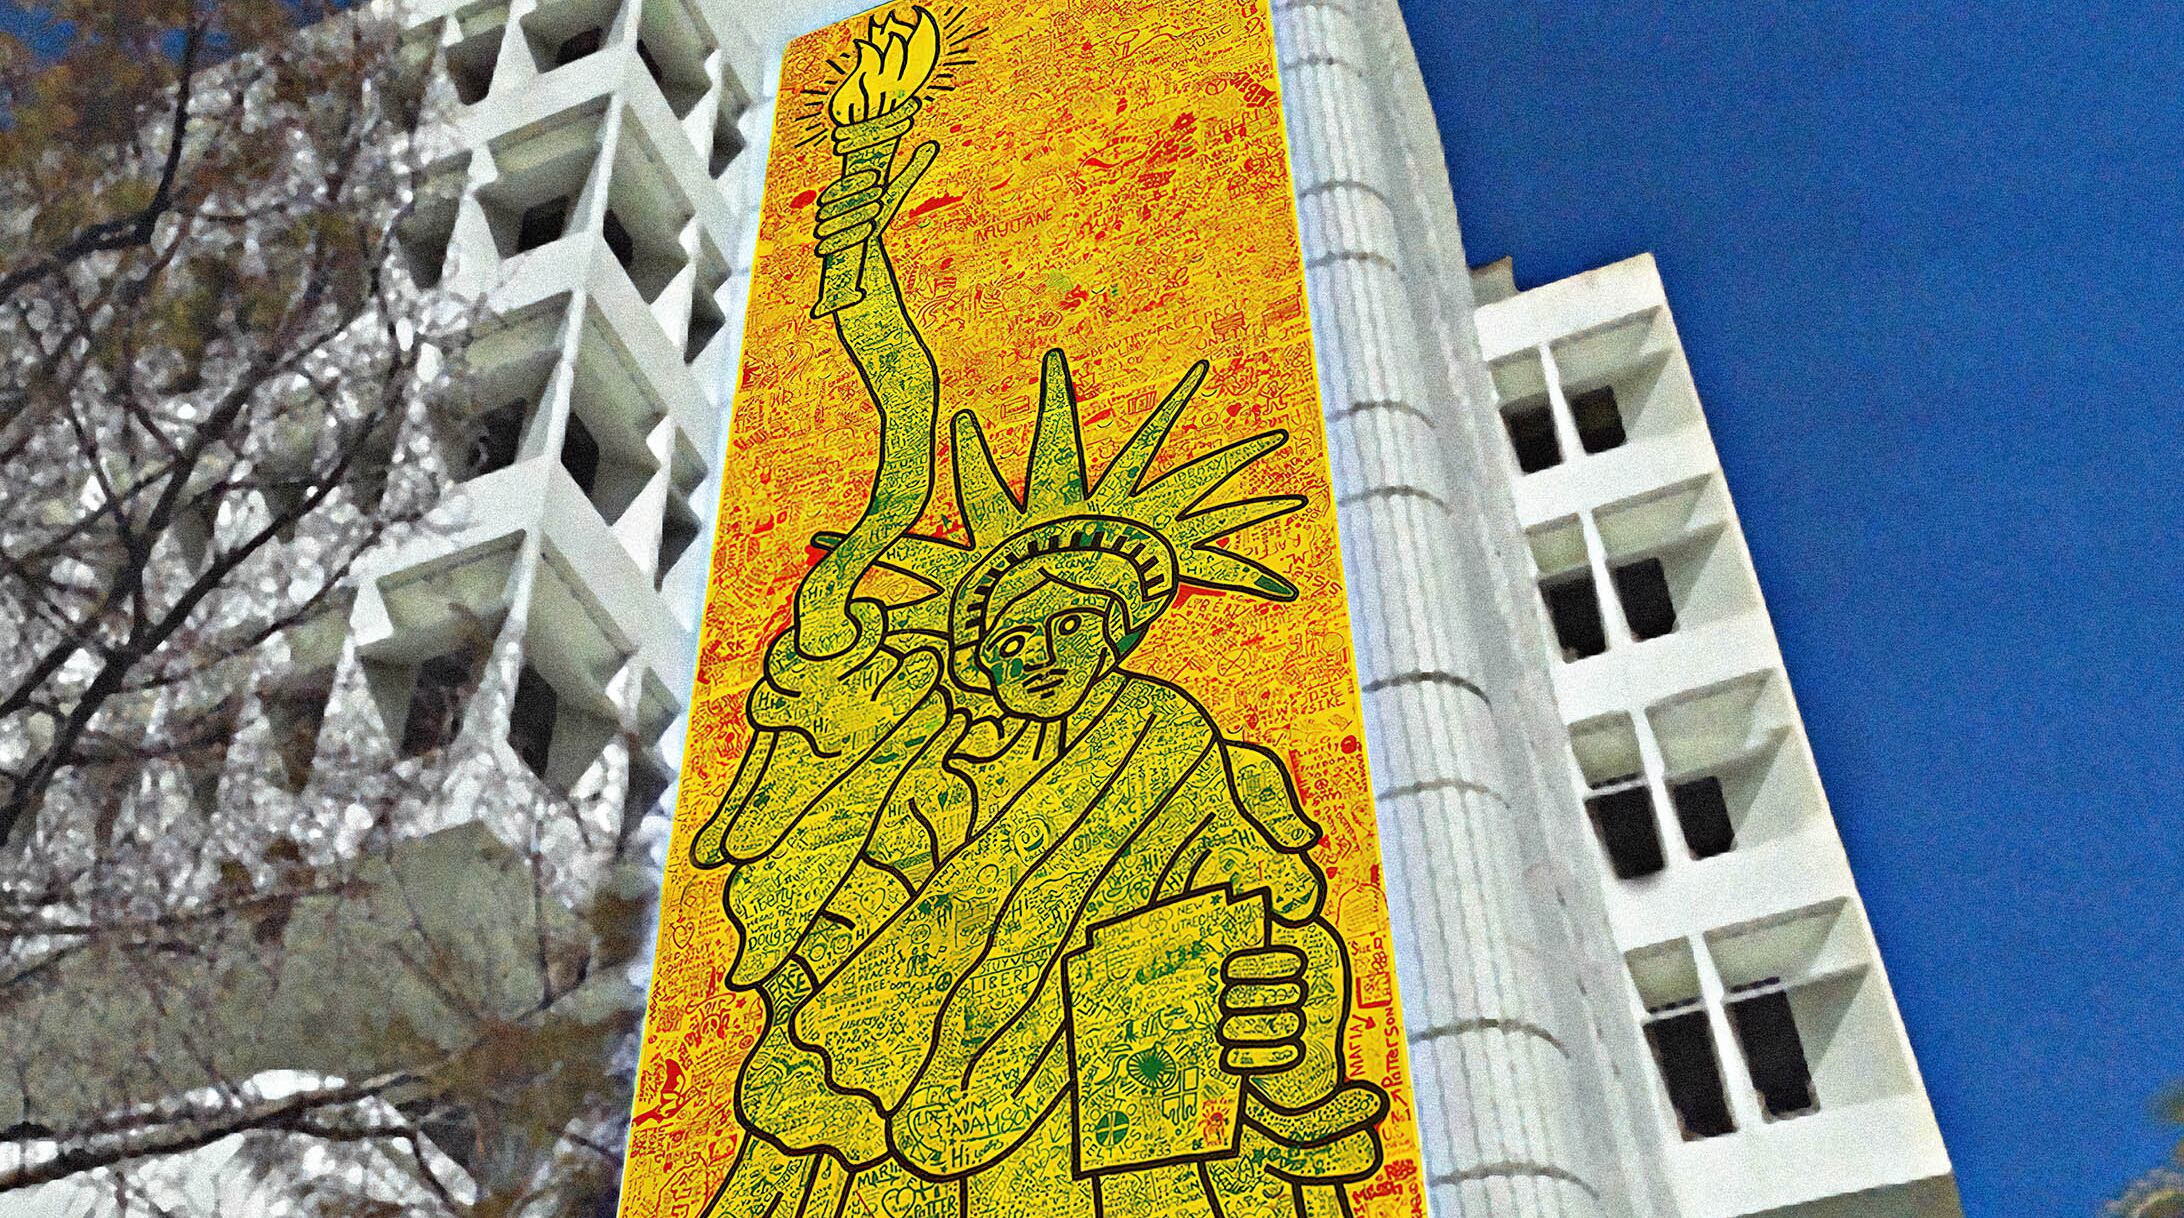 La Estatua de la libertad de Keith Haring se presentará en Lincoln Road